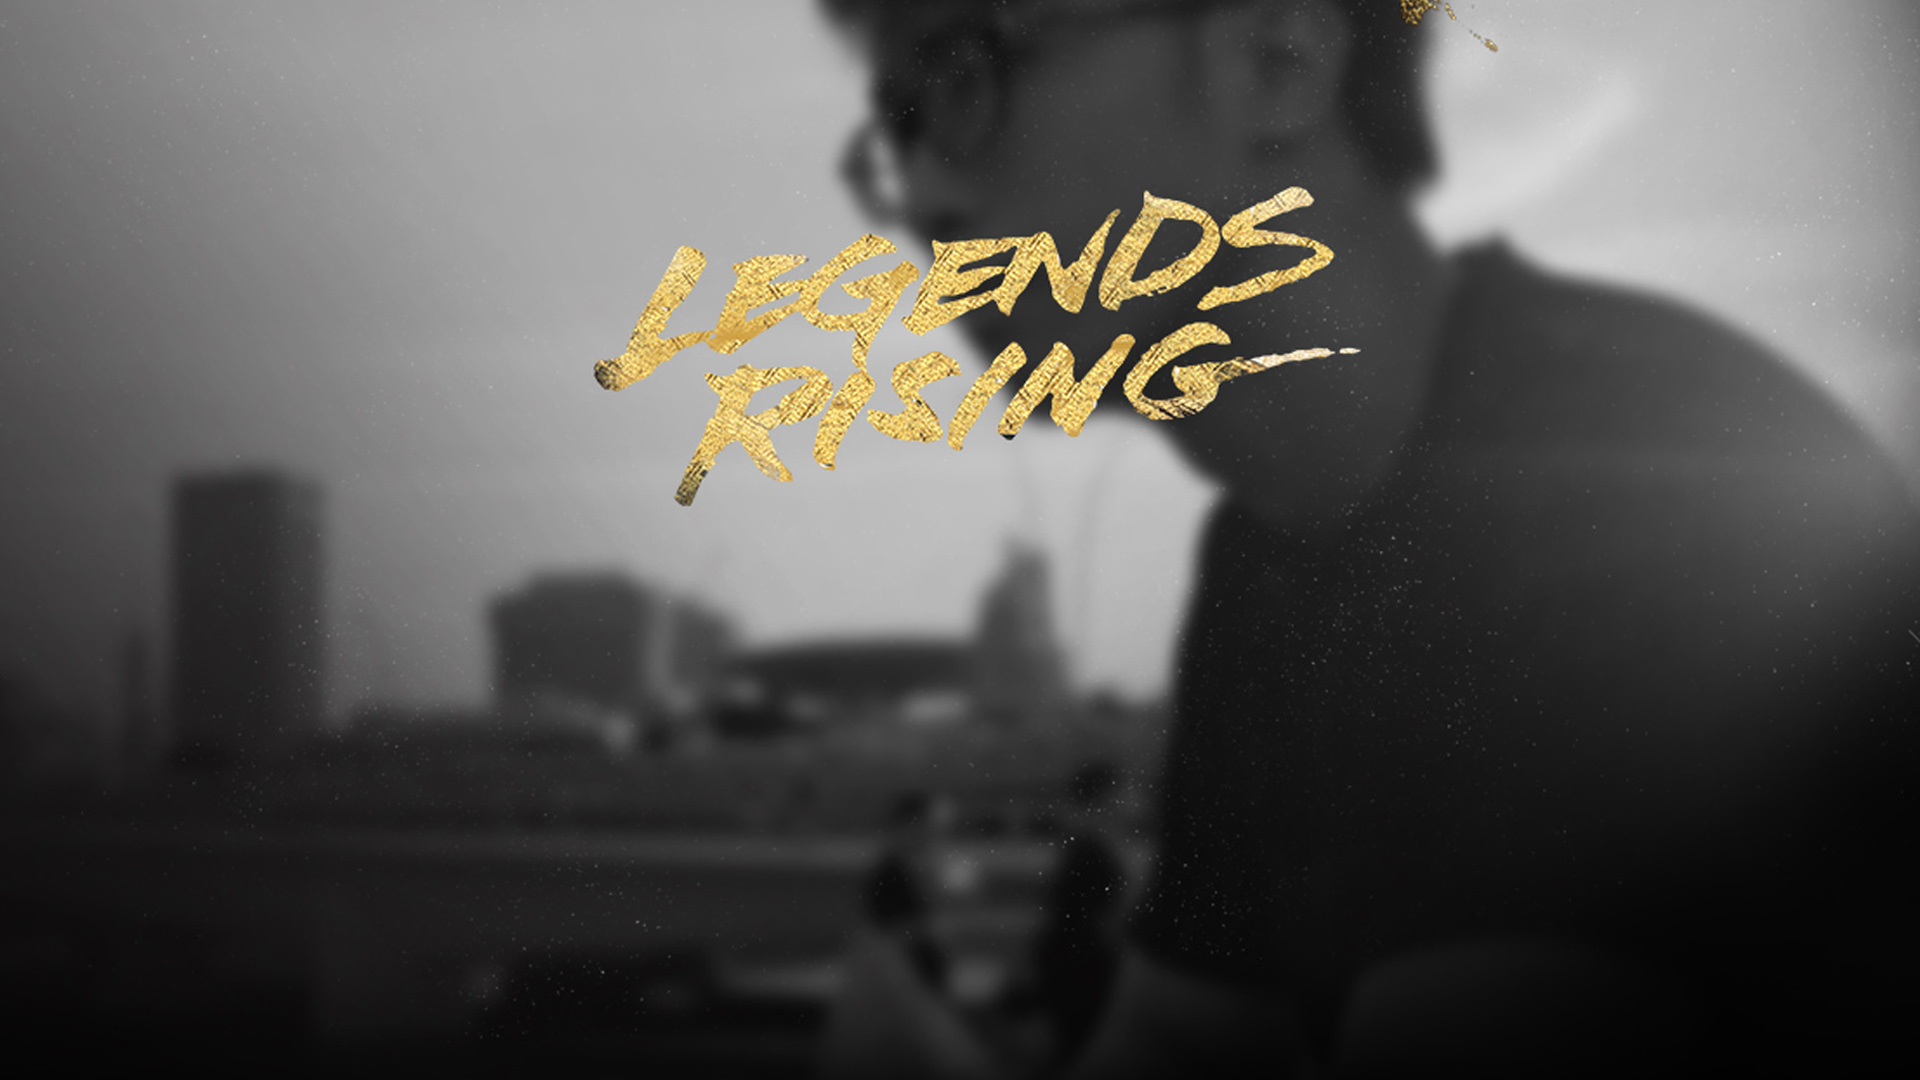     League of Legends | Legends Rising   WATCH  